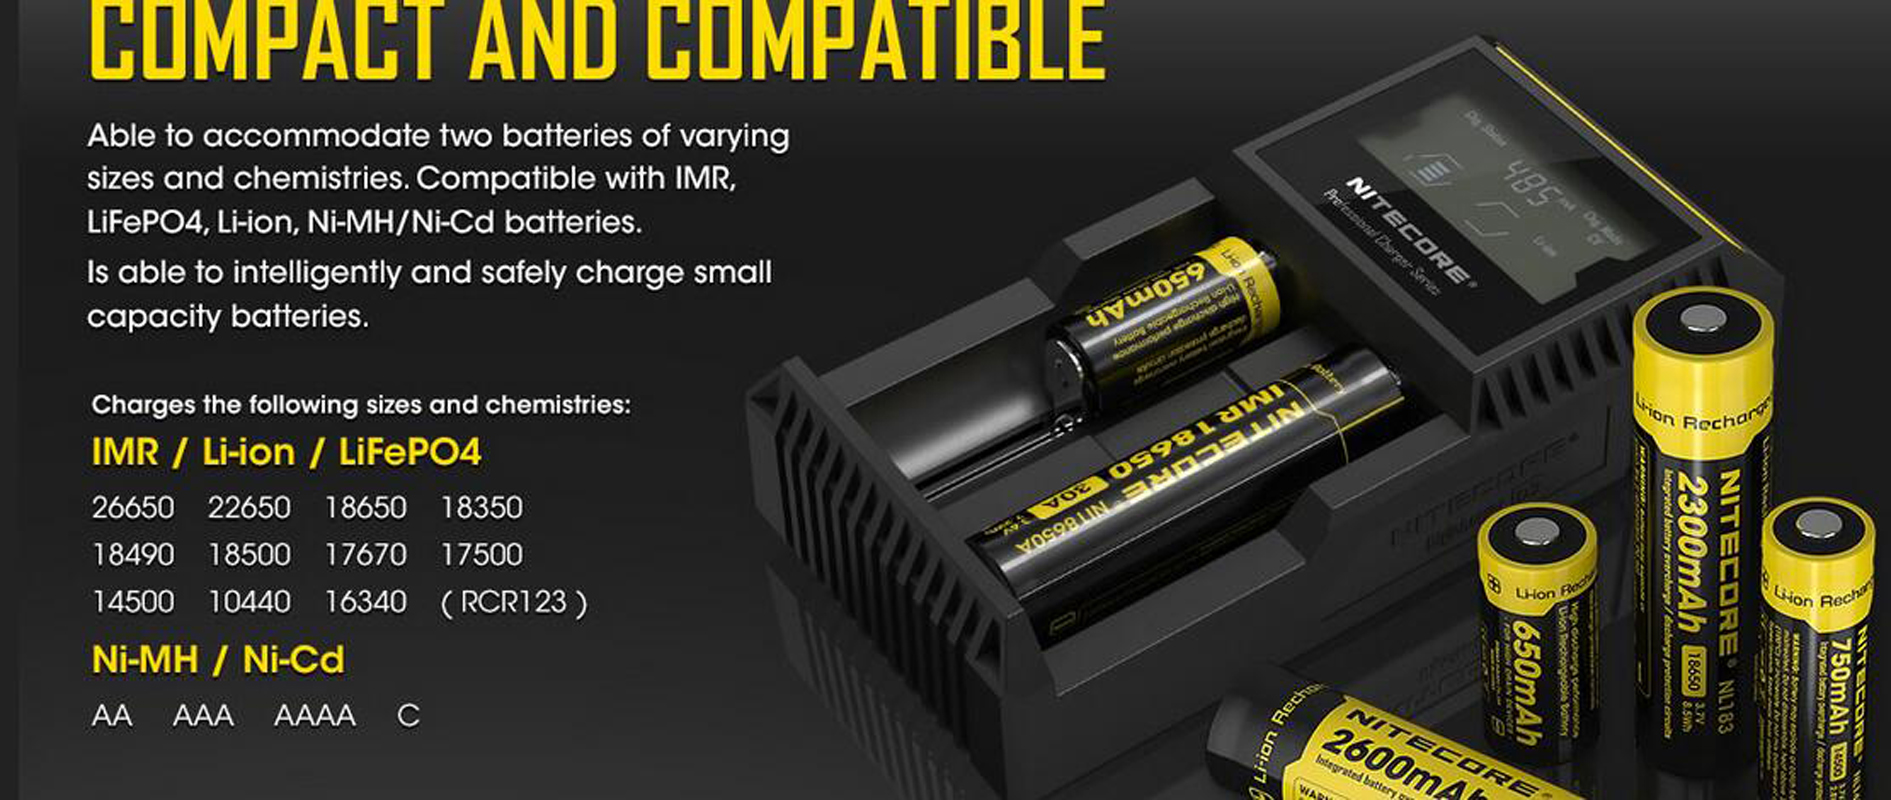 Authentique chargeur Nitecore D2 Digicharger LCD batterie intelligente 2 doubles emplacements Charge pour IMR 16340 18650 14500 26650 18350 batterie Li-ion universelle Vs UM2 Q2